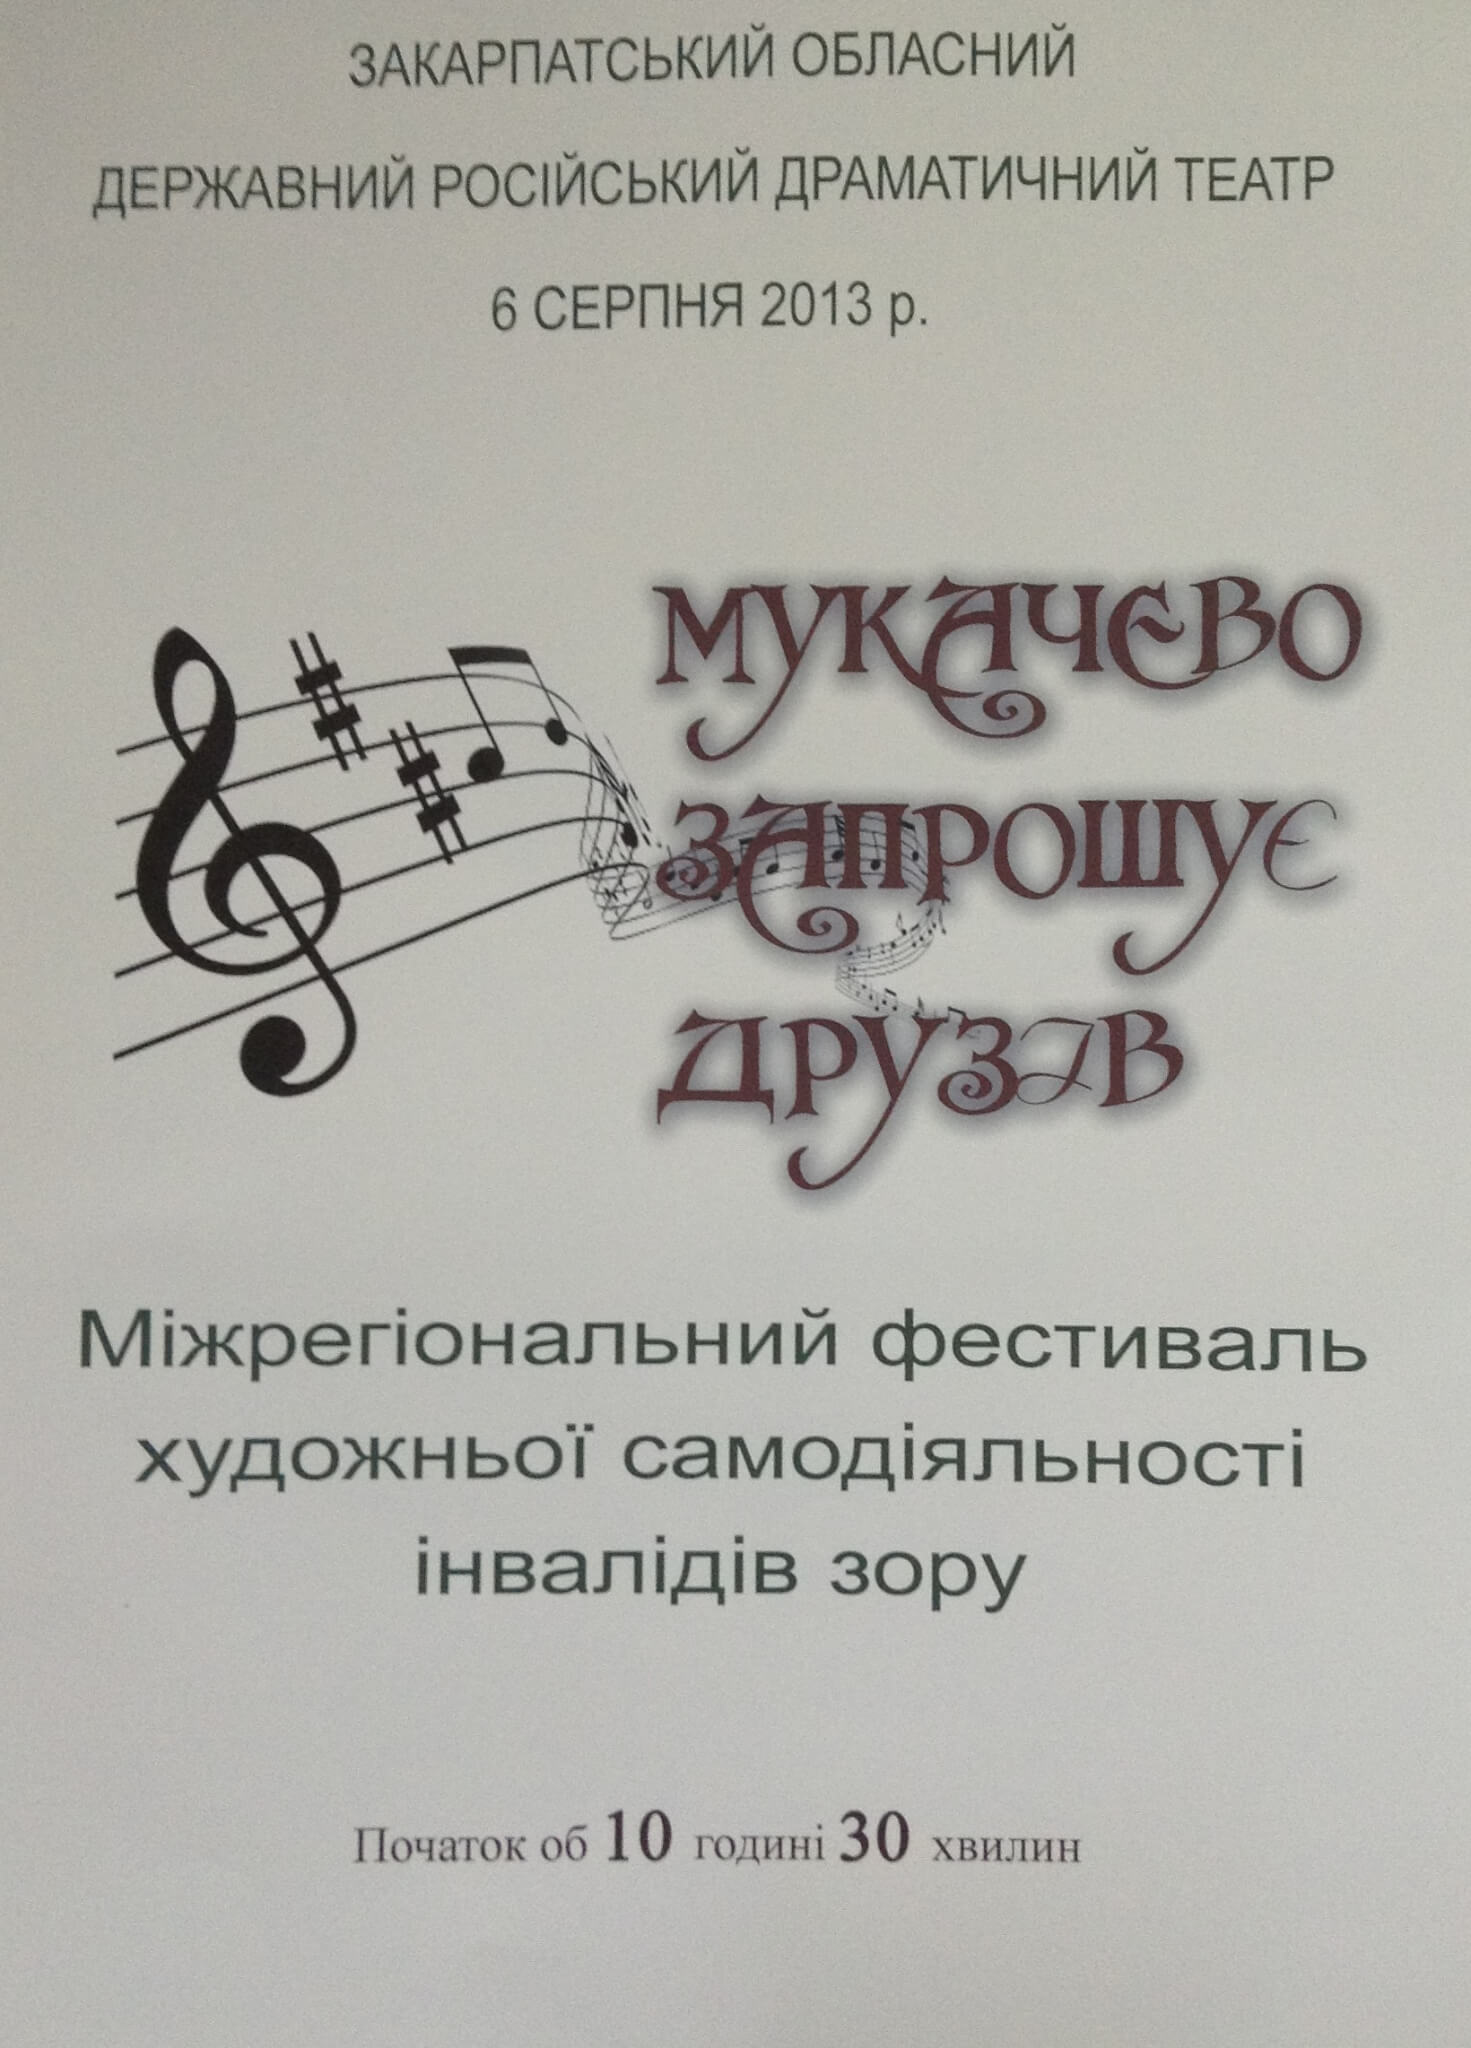 Фестиваль “Мукачево запрошує друзів” пройде завтра в місті над Латорицею